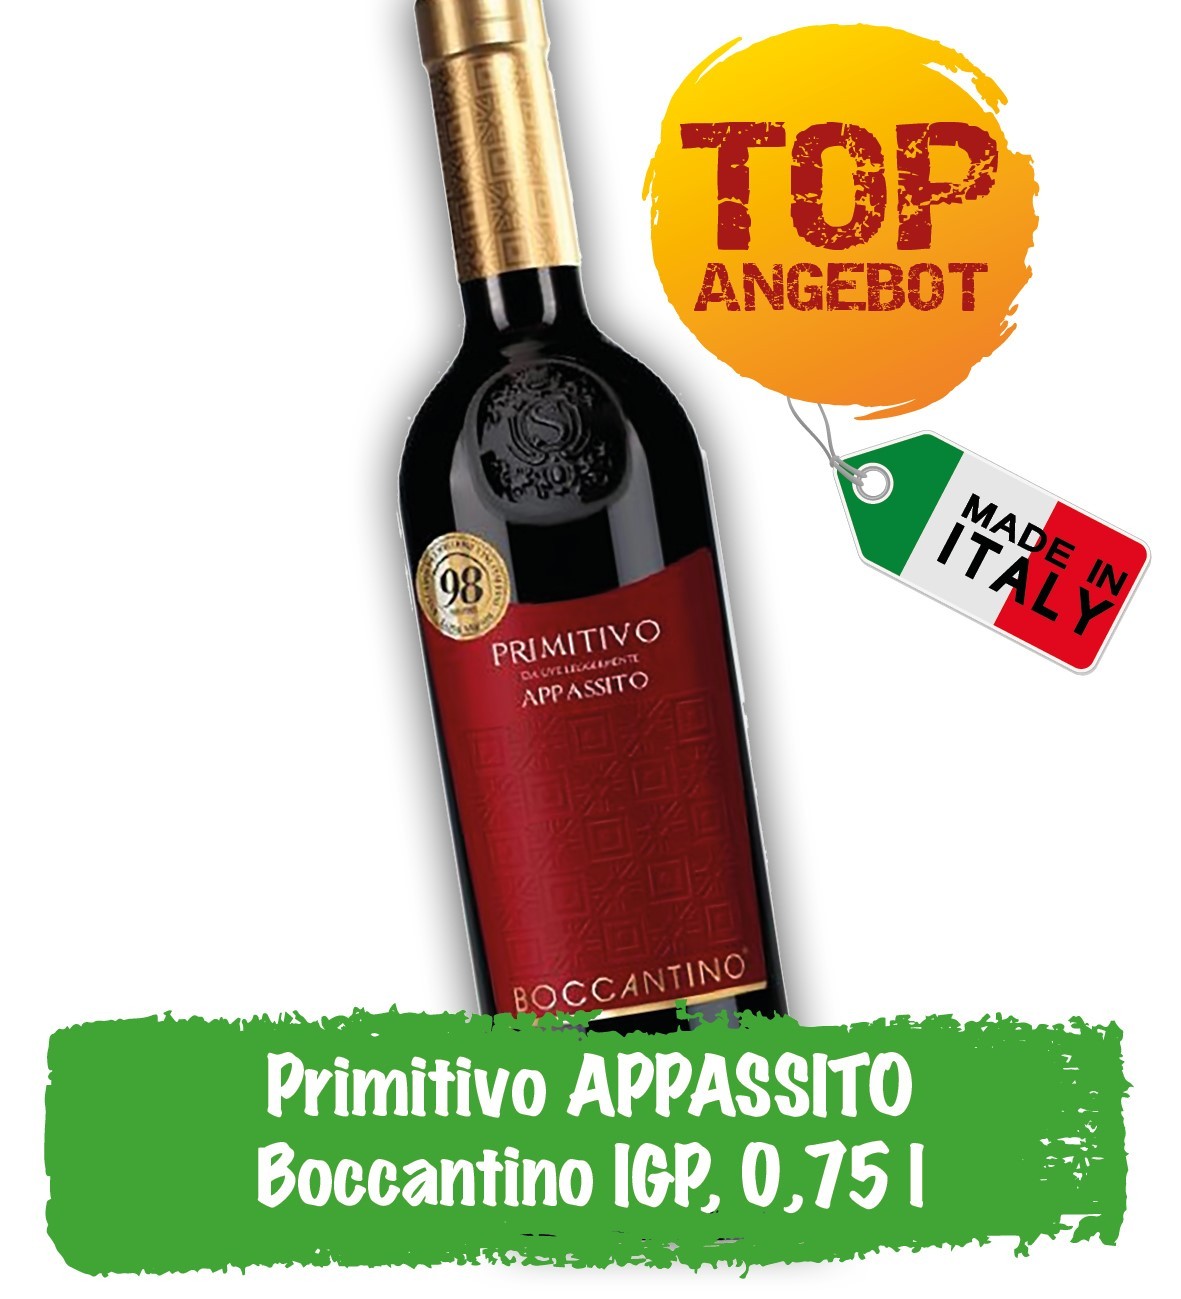 Top_Primitivo_Appassito_Boccantino